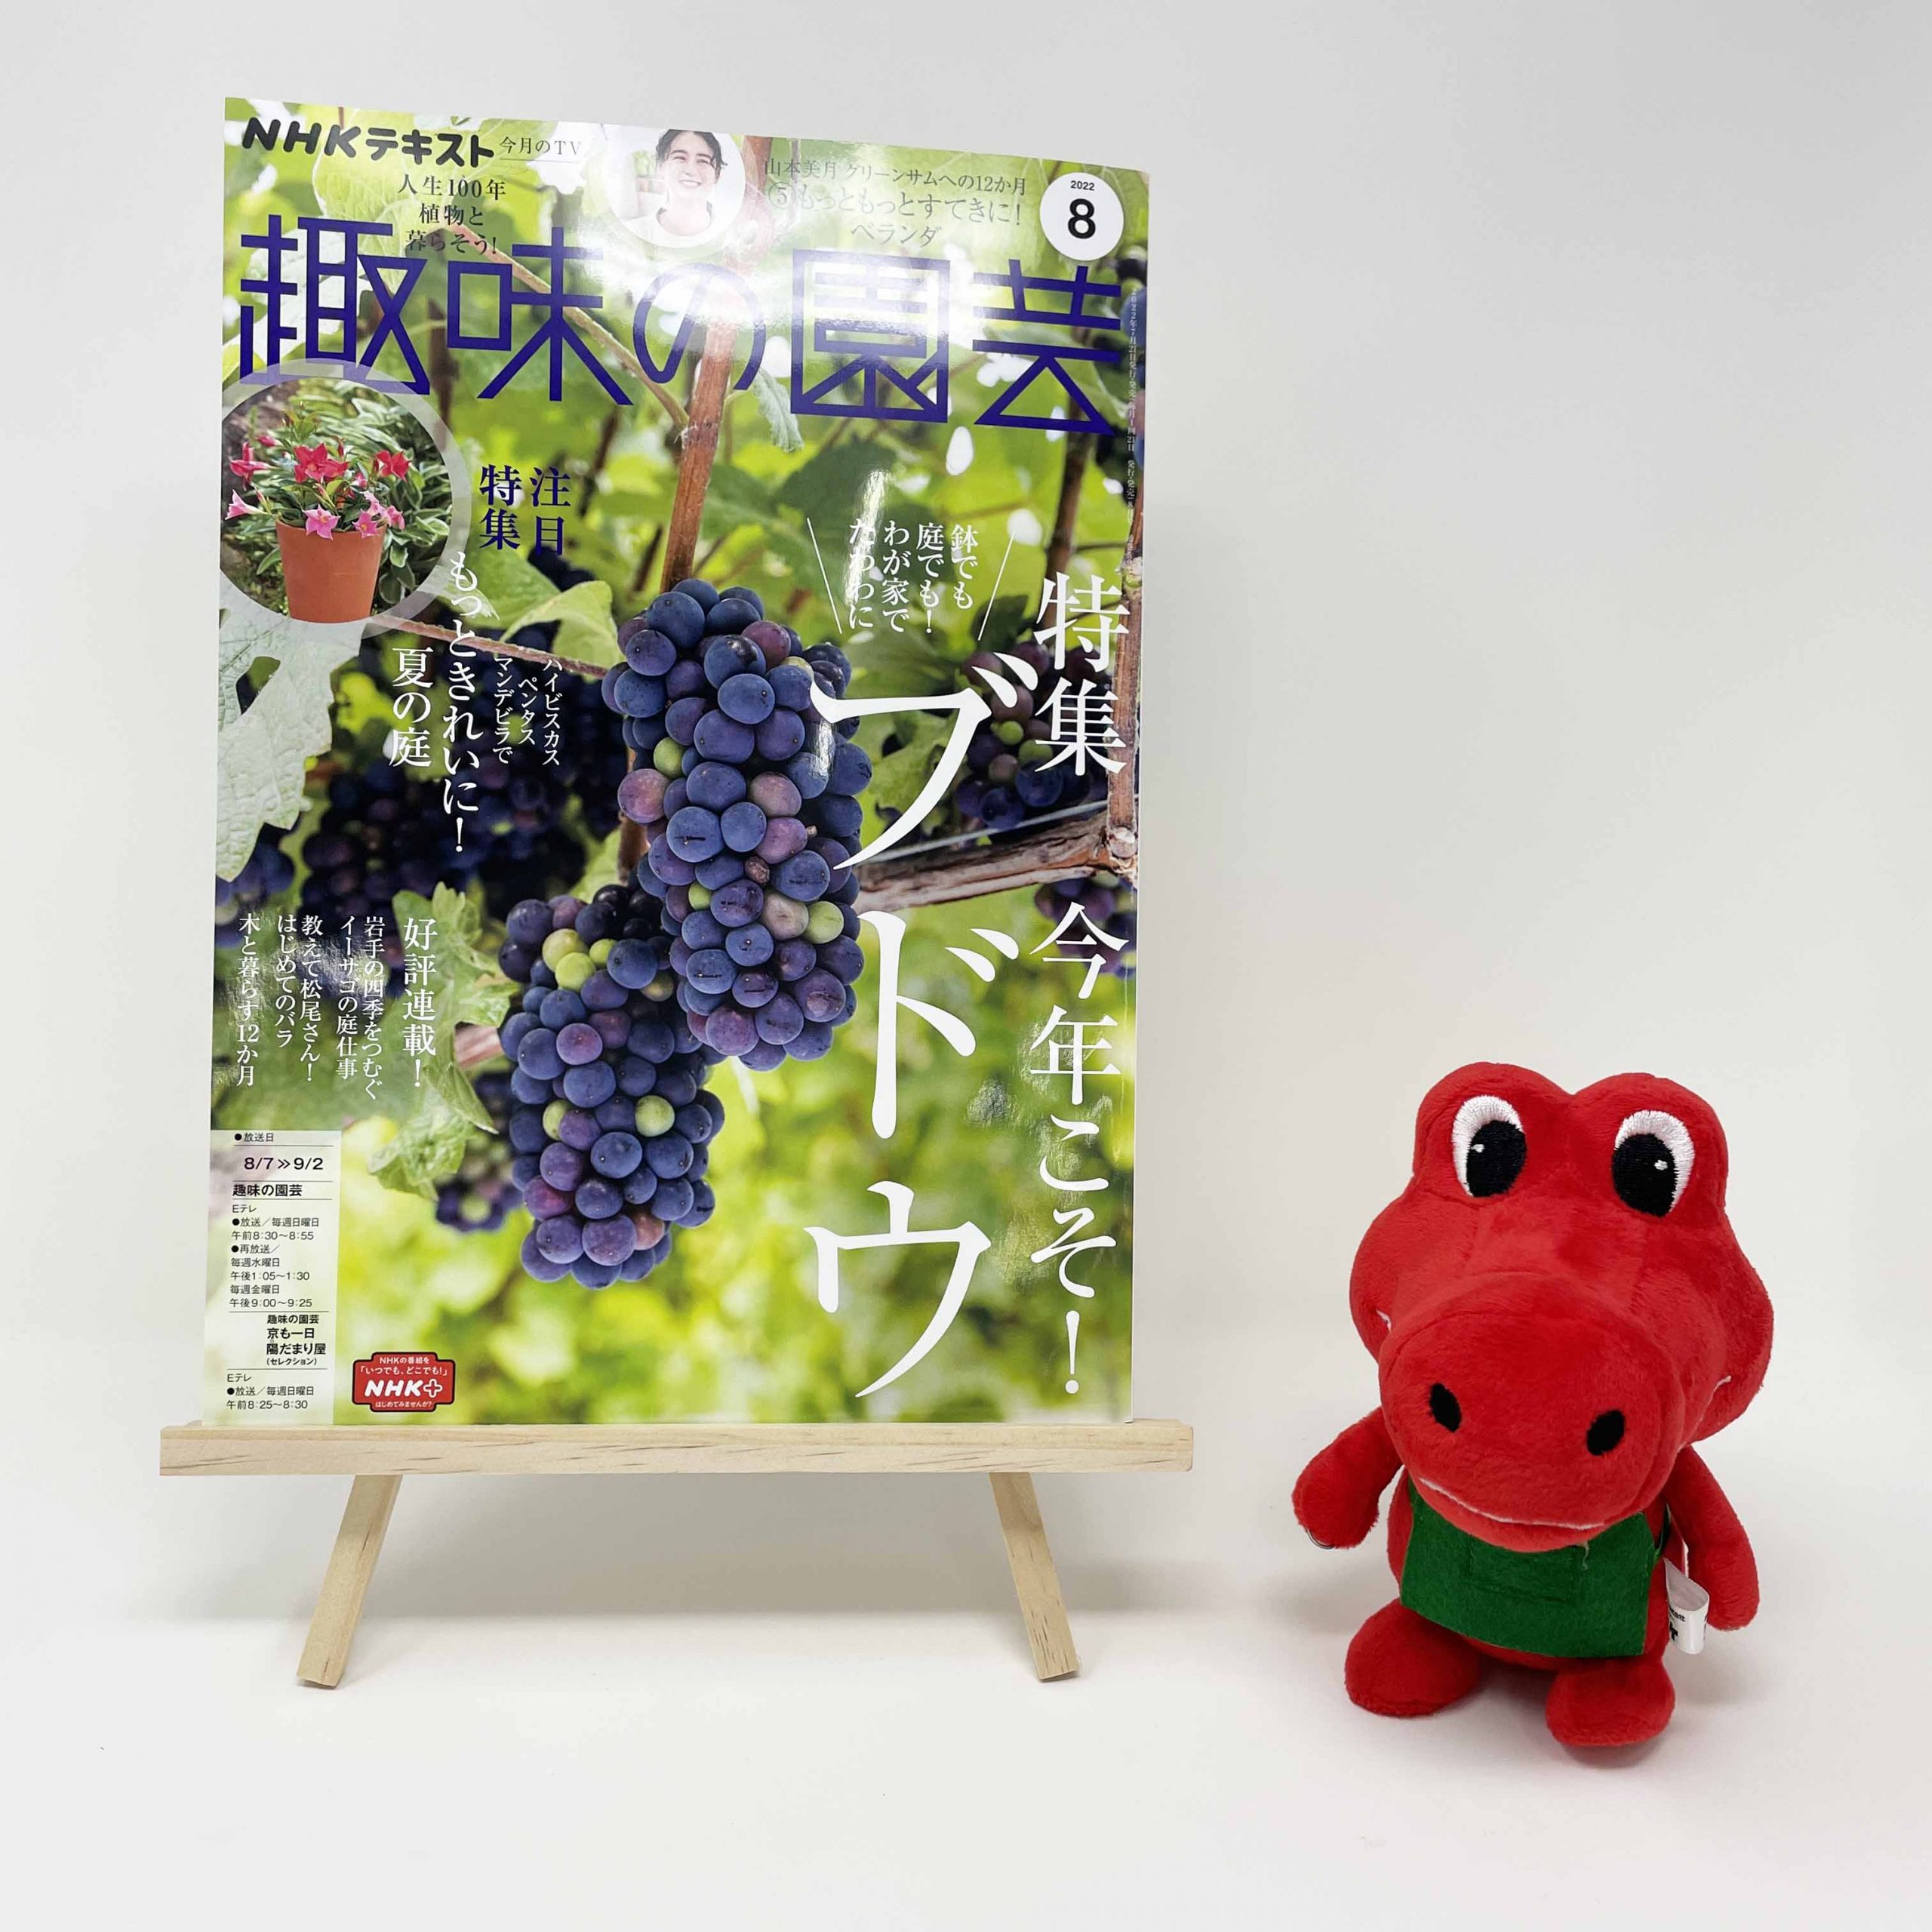 【メディア掲載情報】NHK出版「趣味の園芸」2022年8月号